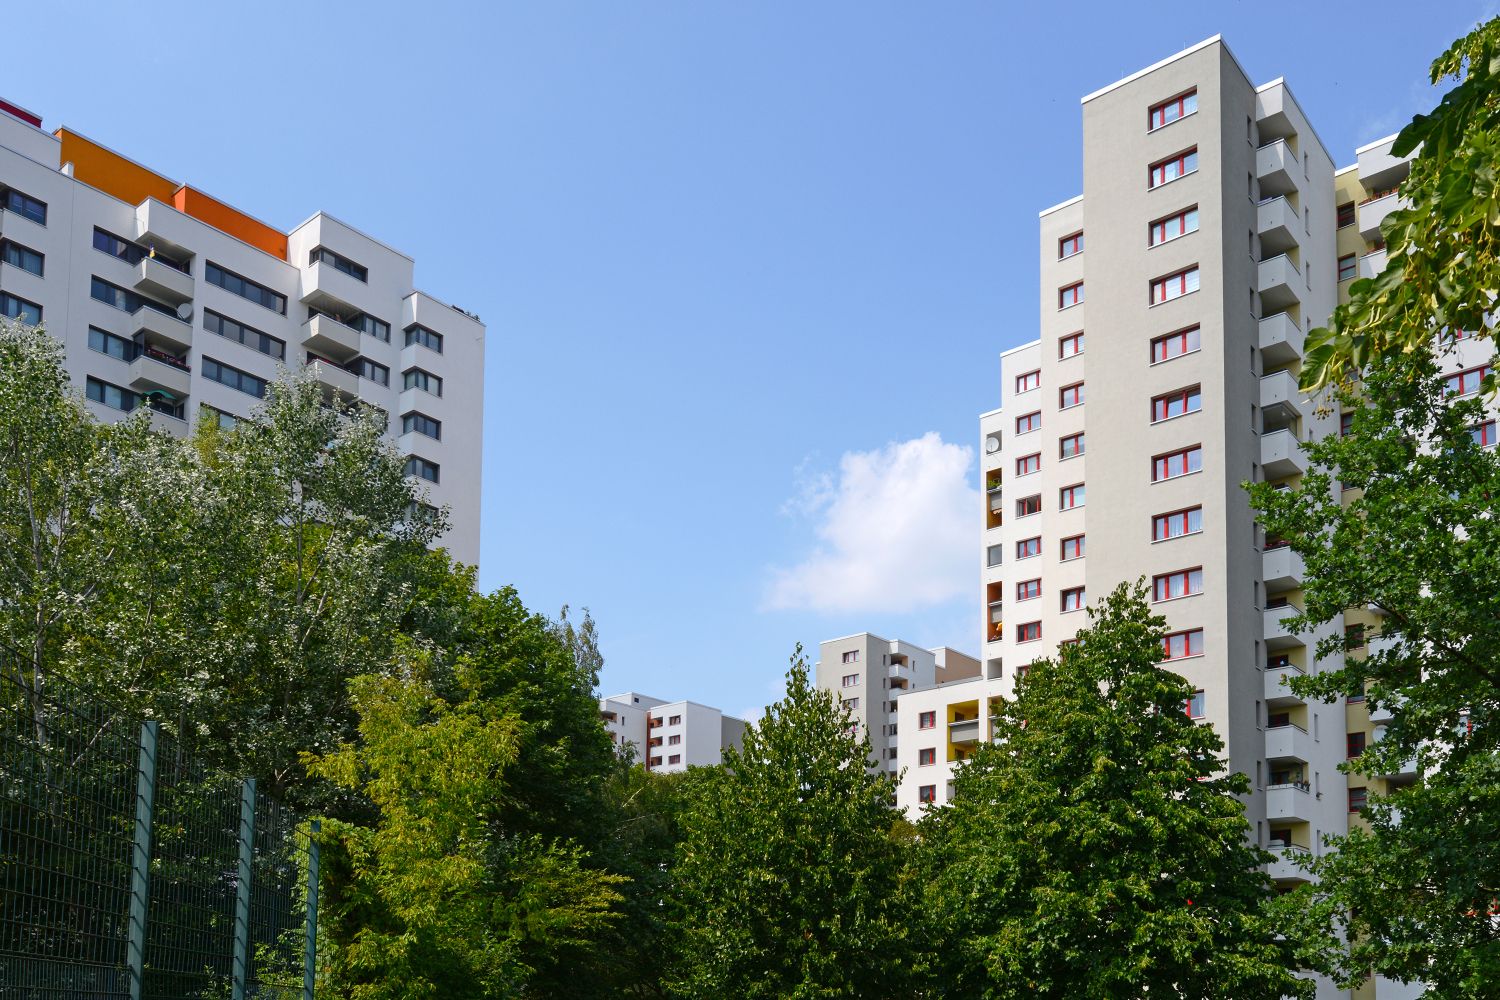 Märkisches Viertel in Berlin, 2016